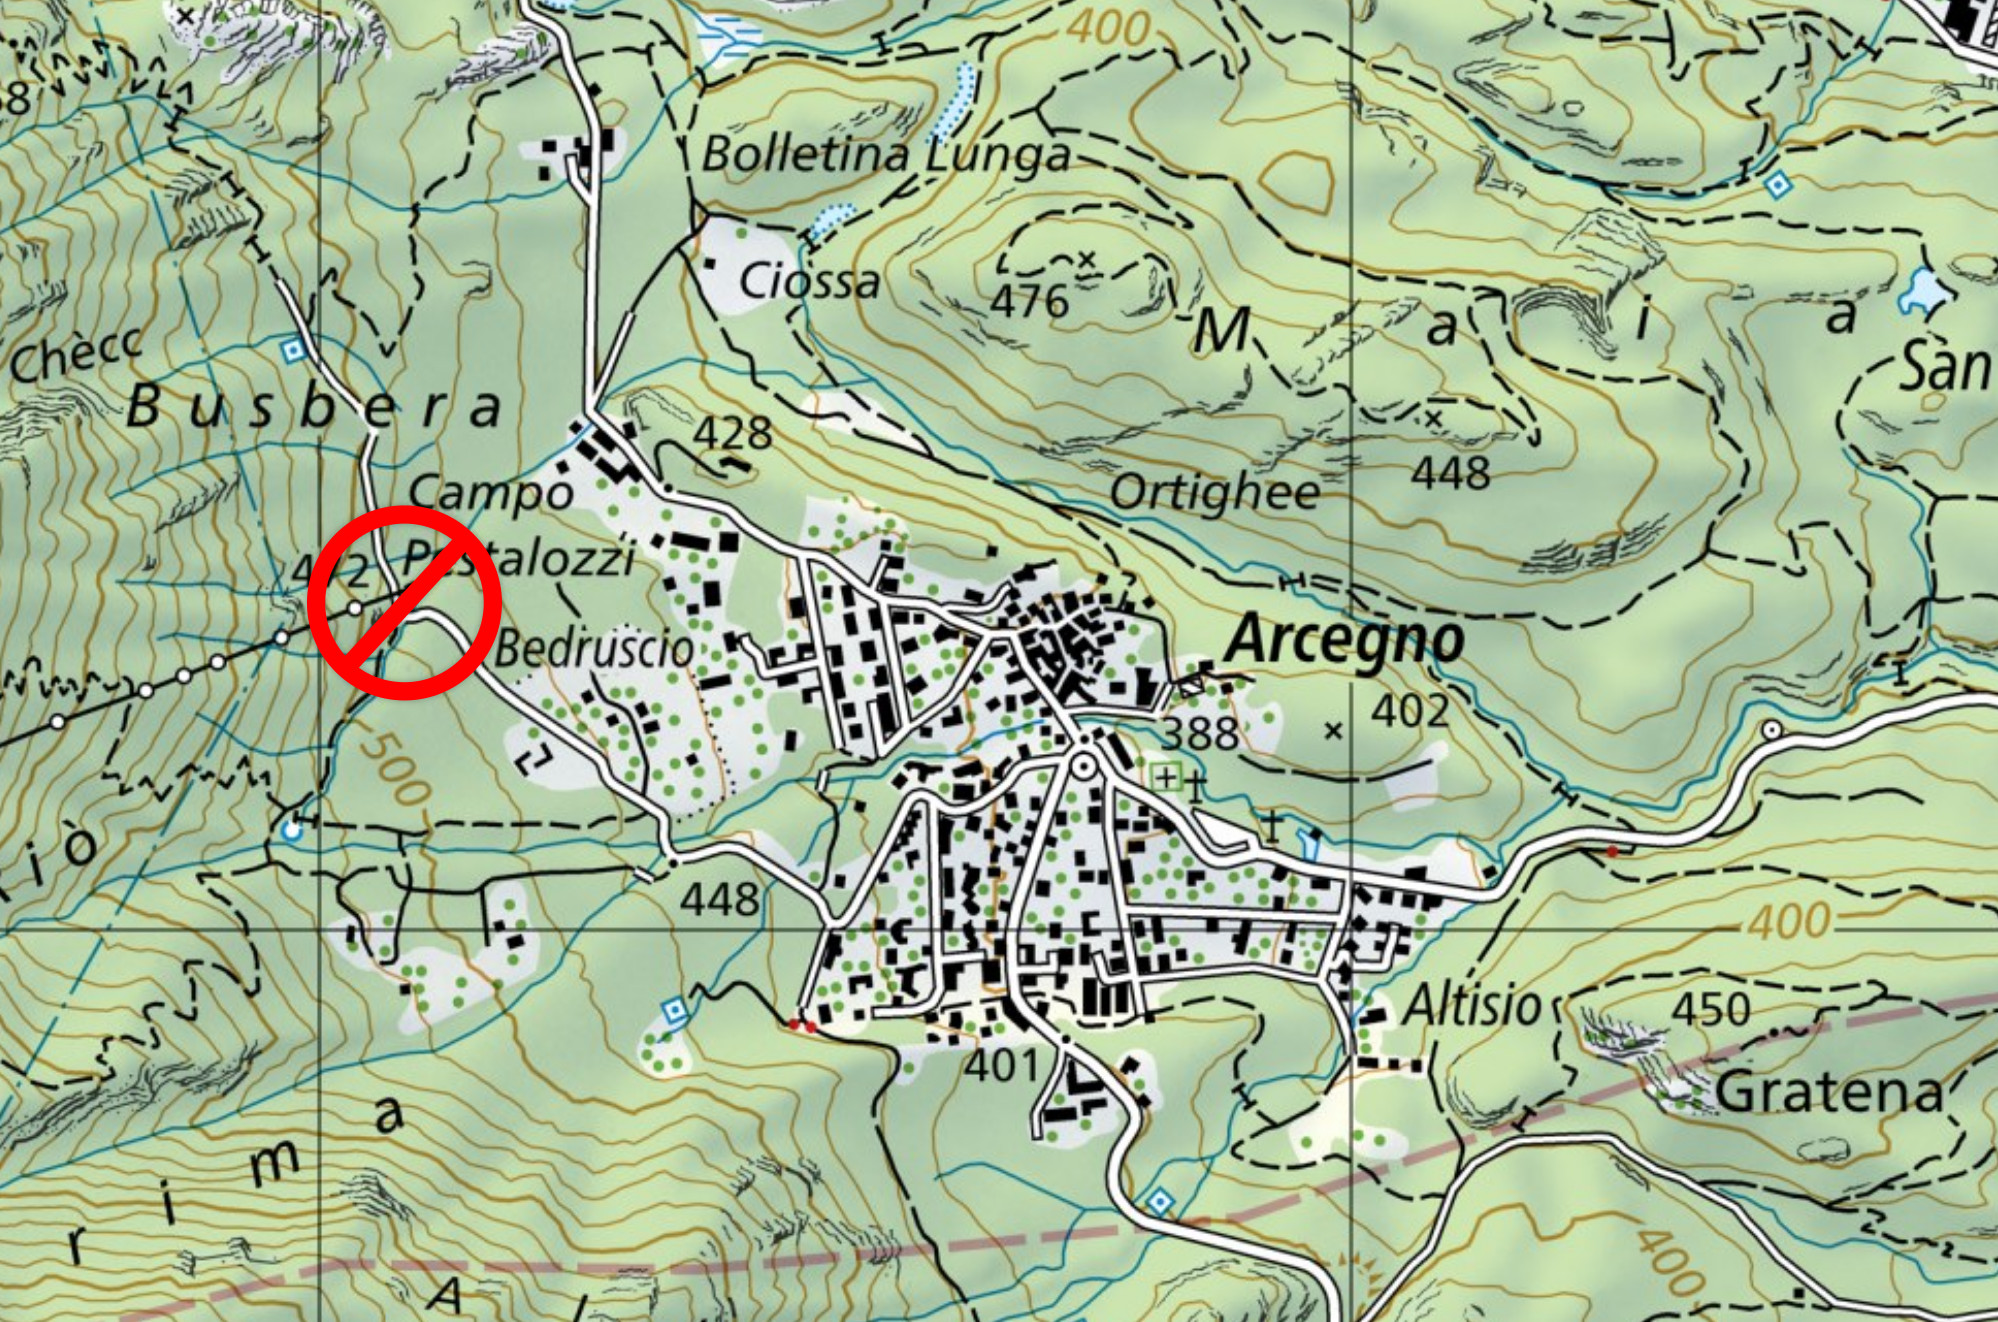 Nella mappa l'area sbarrata del sentiero tra Bedruscio e Busbera.